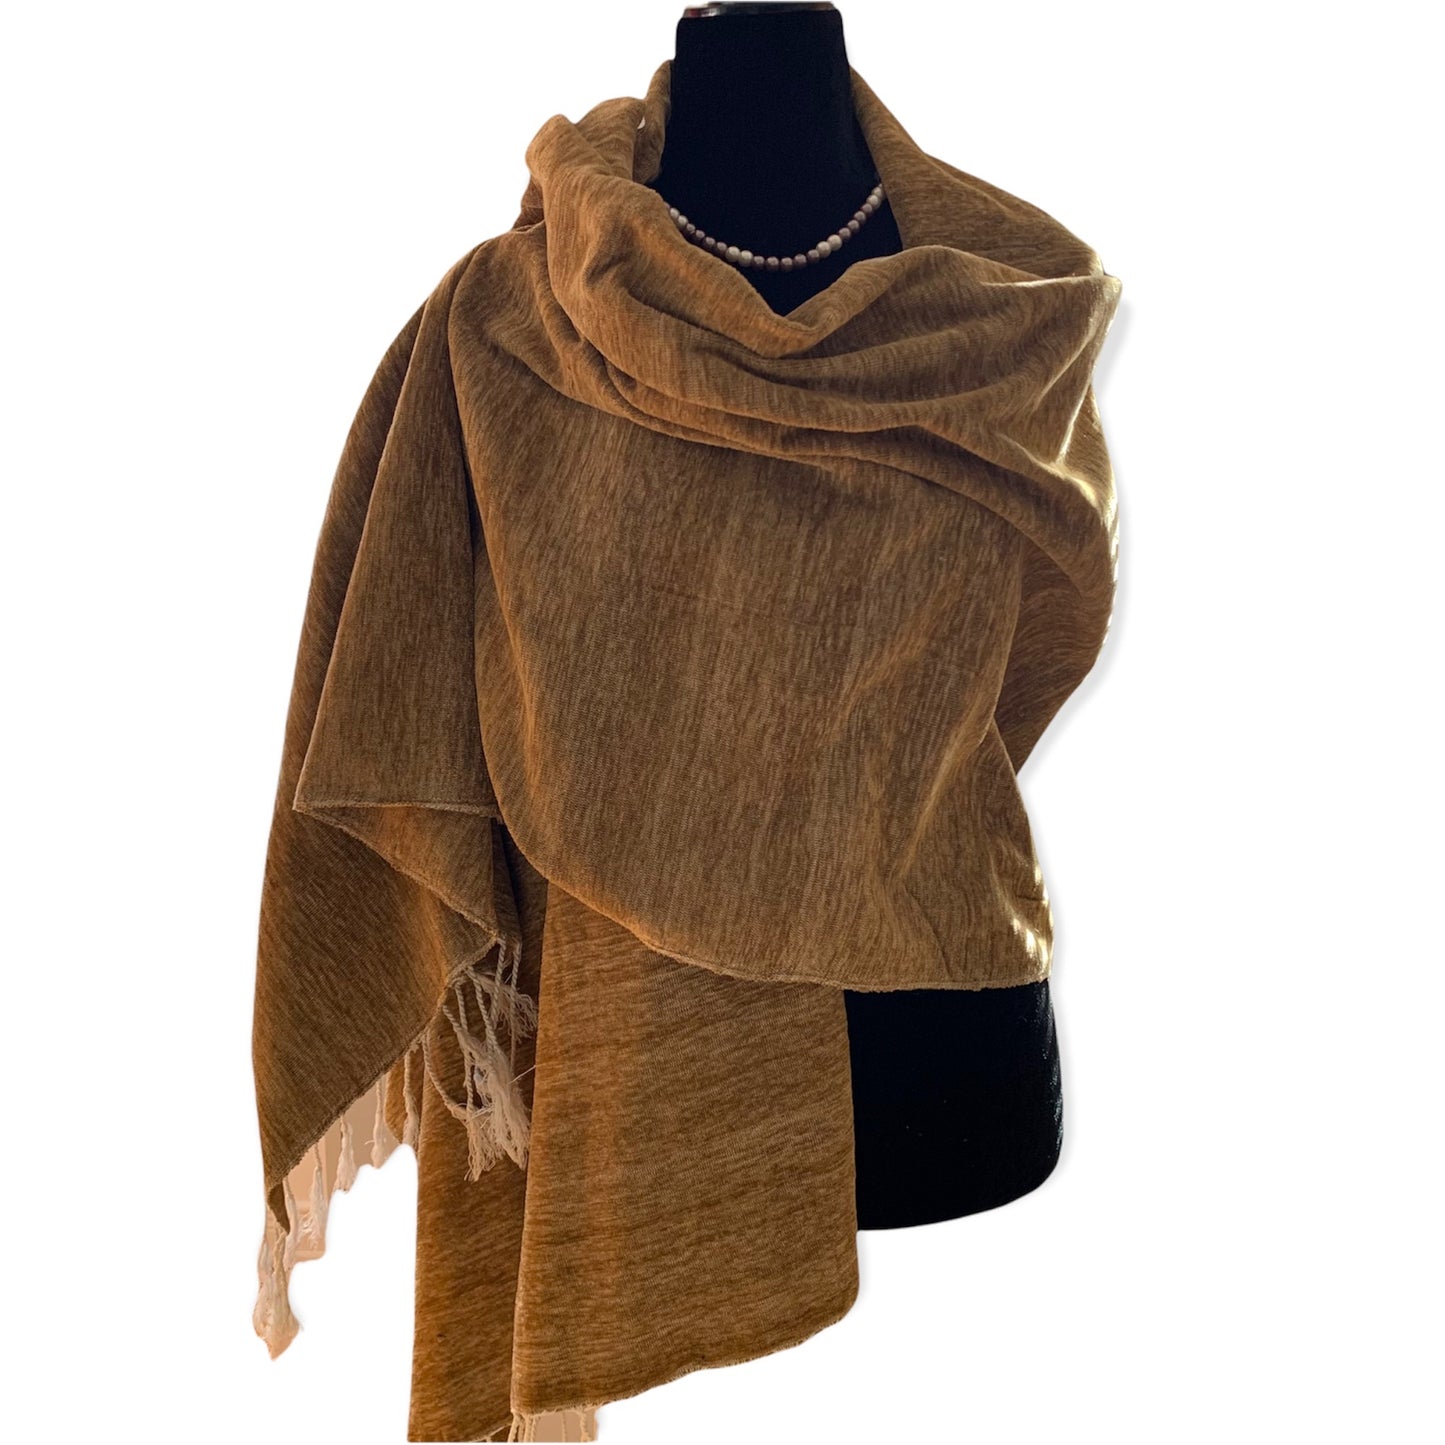 Handwoven Velvet Shawl - Camel: Velvet & Cotton